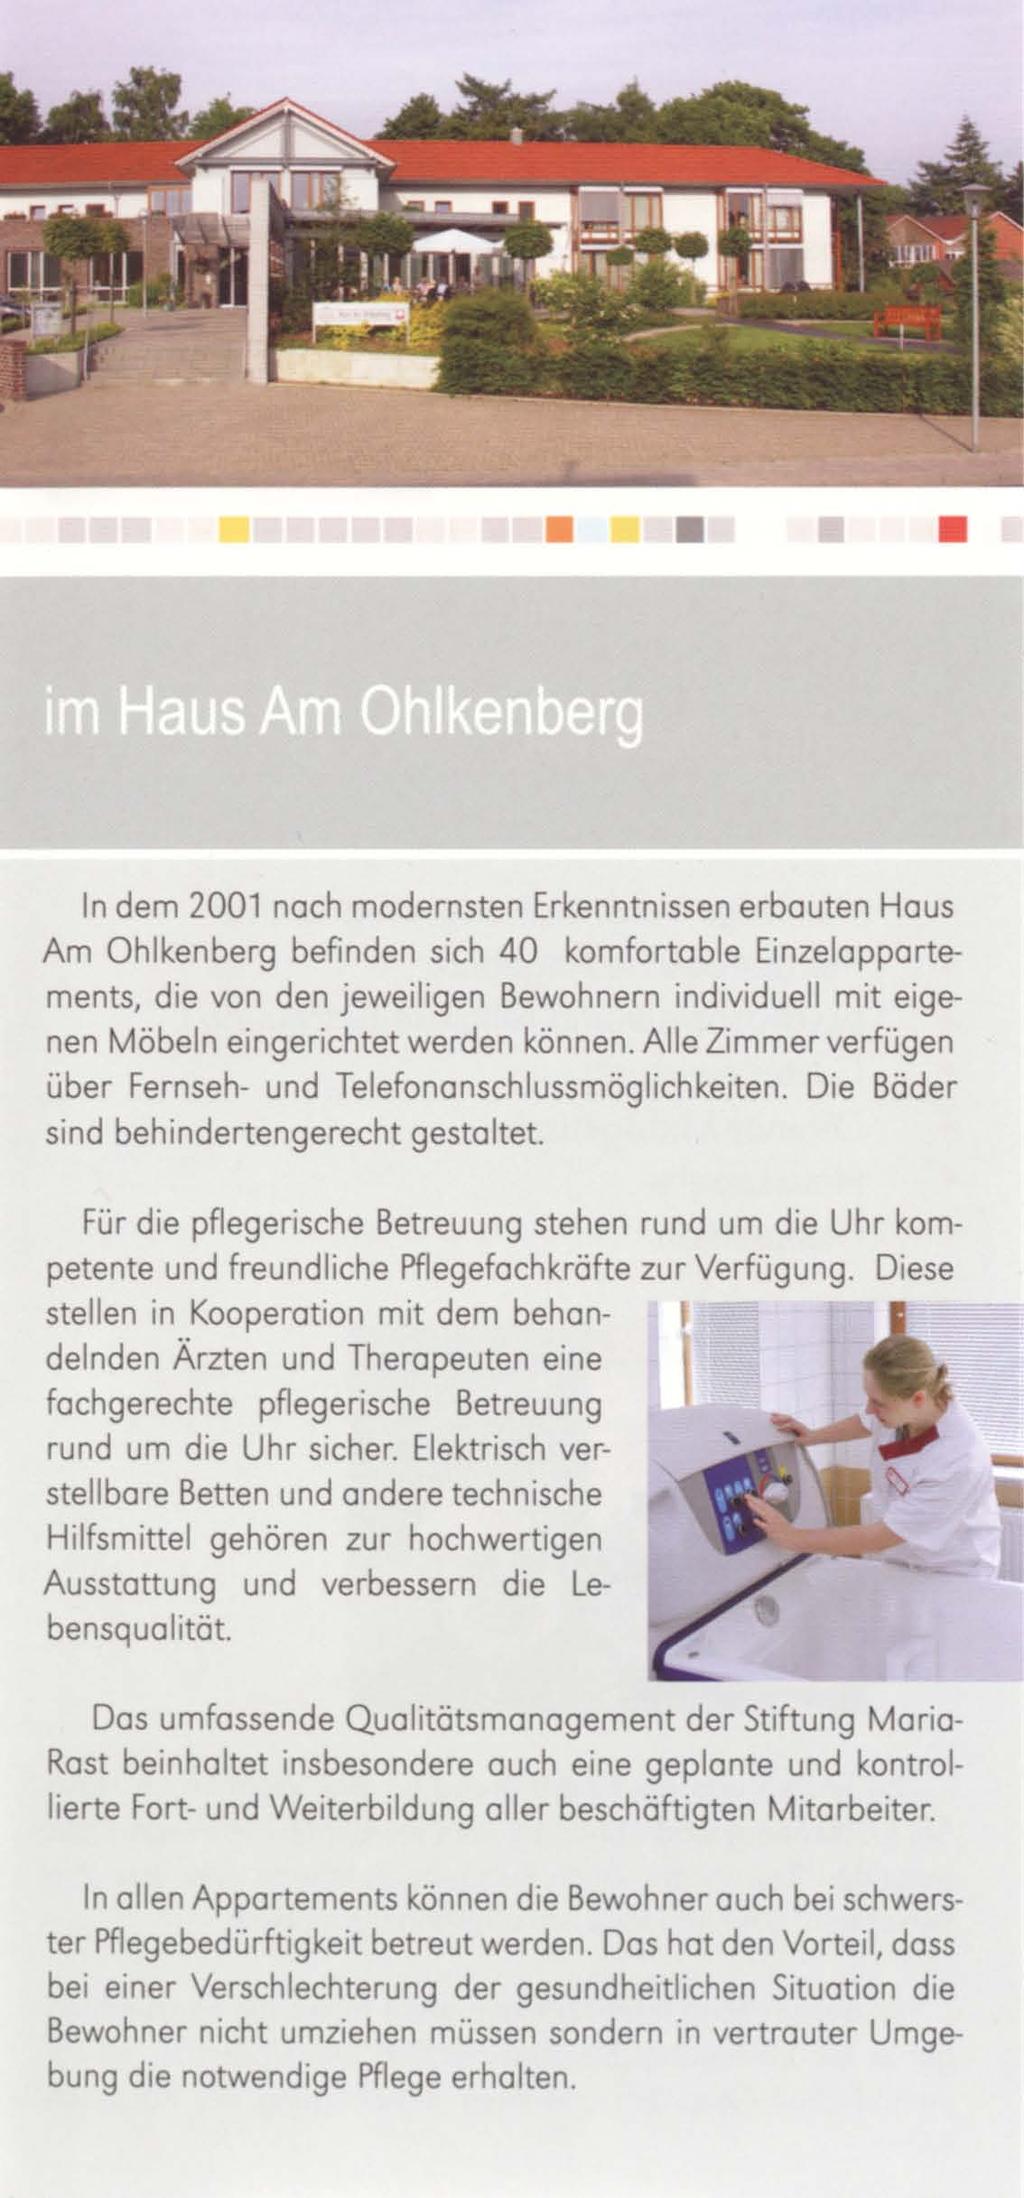 In dem 2001 noch modernsten Erkenntnissen erbauten Haus Am Ohlkenberg befinden sich 40 komfortable EinzeIappartements, die von den jeweiligen Bewohnern individuell mit eigenen Möbeln eingerichtet